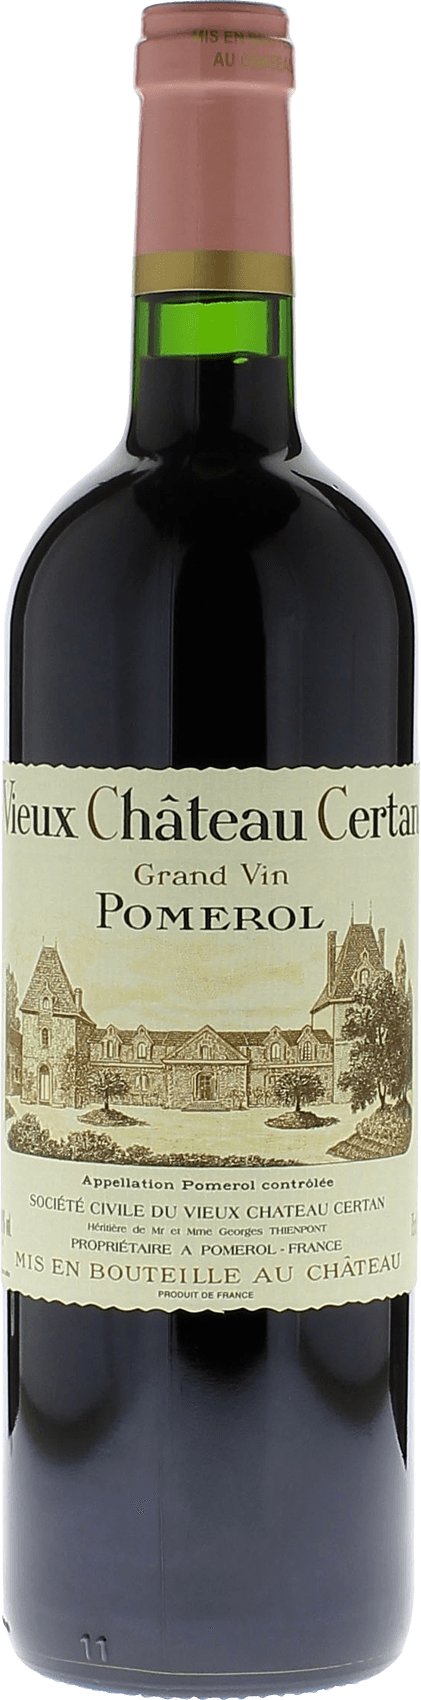 Vieux chteau  certan 2019  Pomerol, Bordeaux rouge